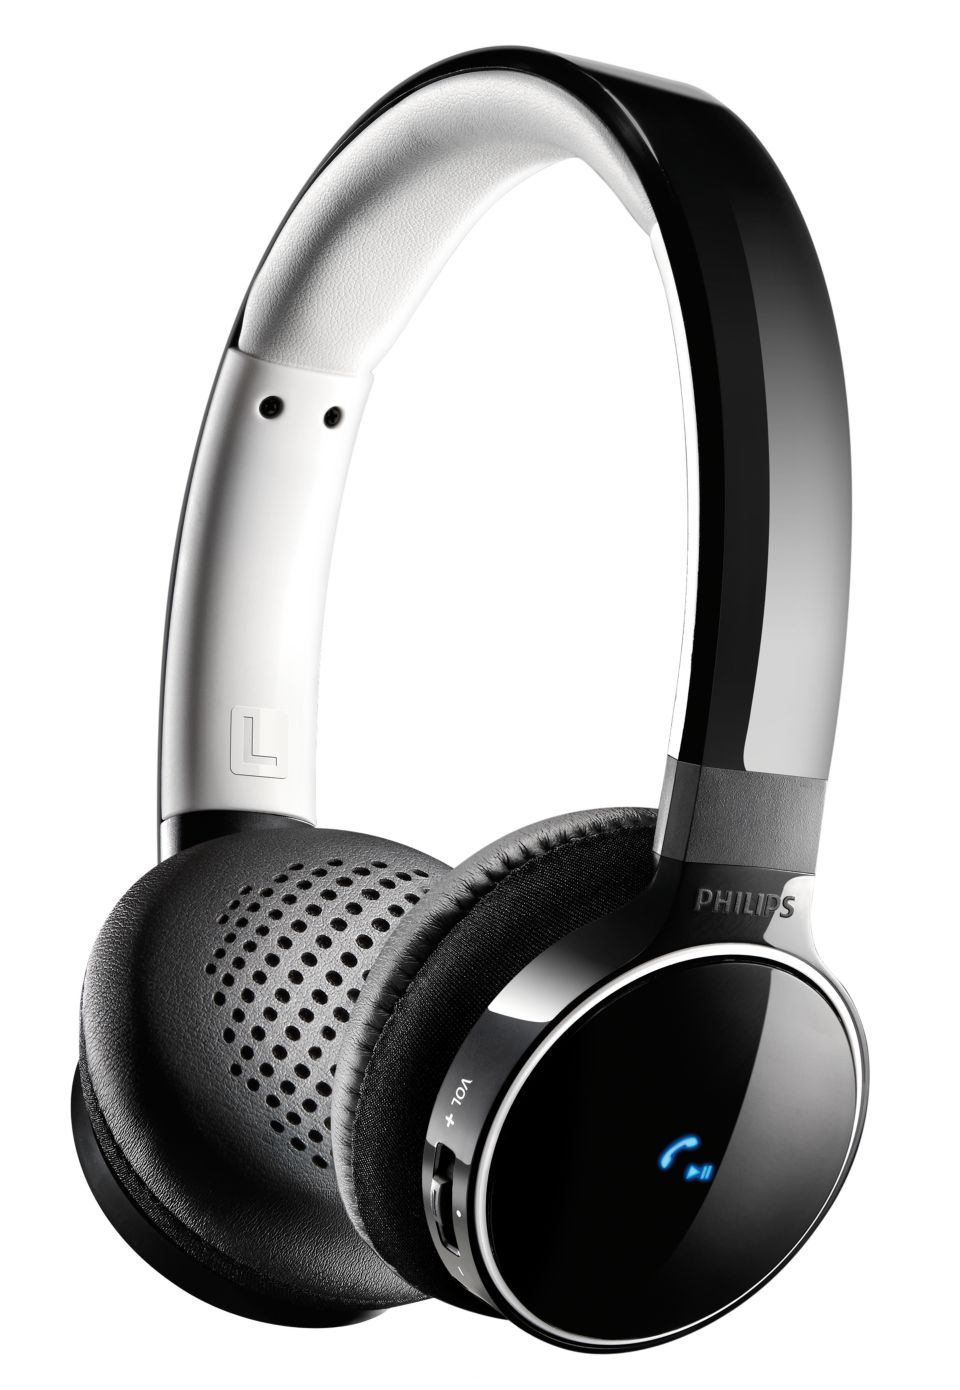 Fones de ouvido sem fio Bluetooth® SHB9150BK/00